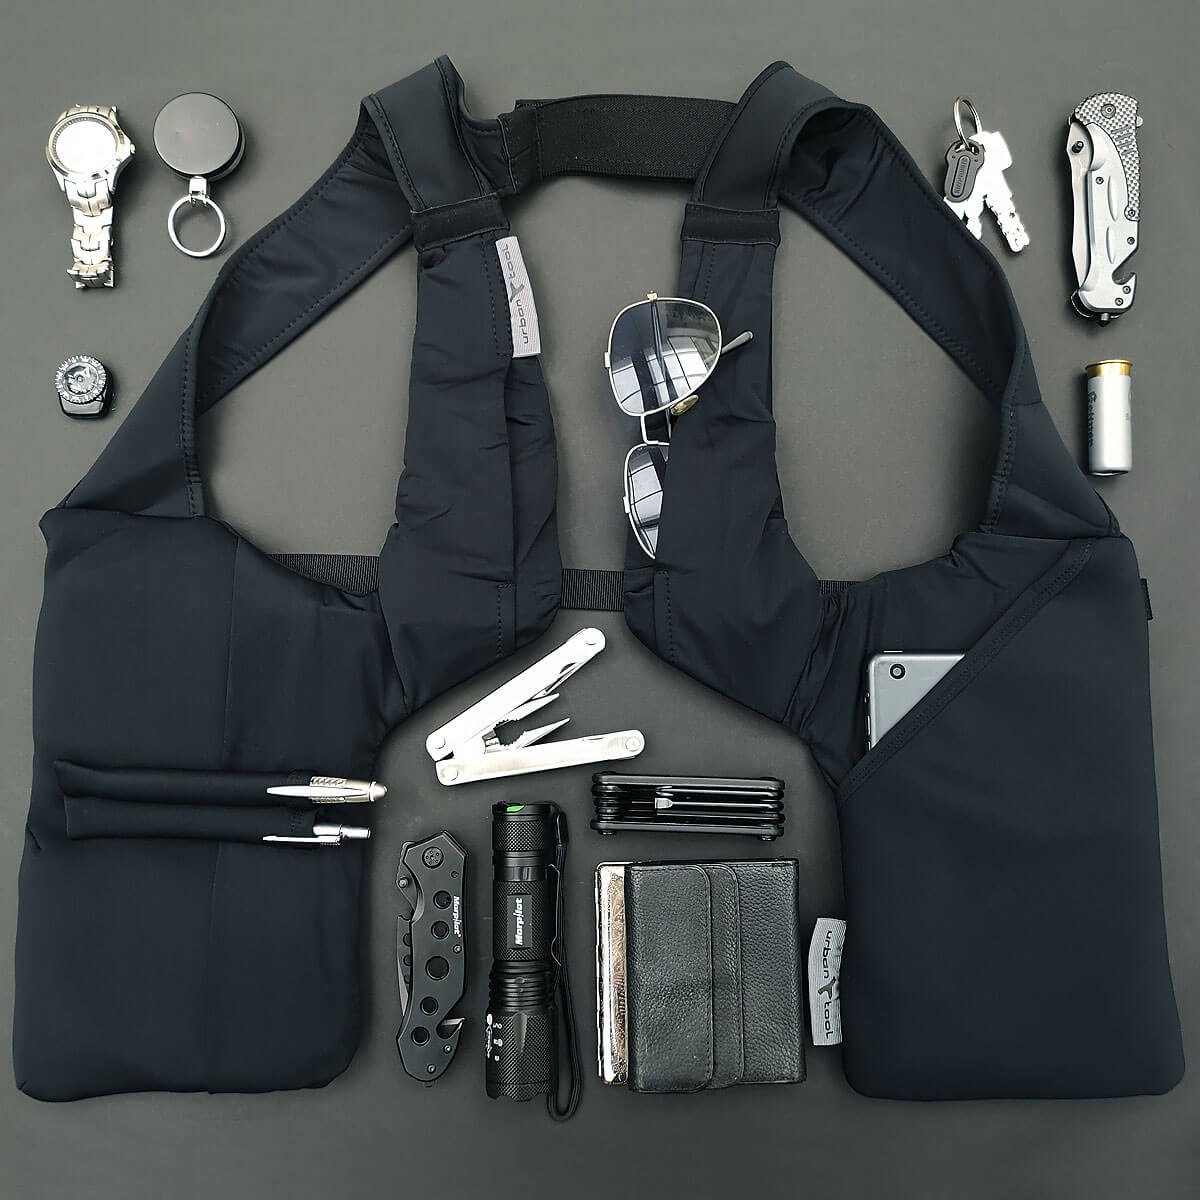 Belt Bag for Phone, Keys, Money, Running Gear Urban Tool caseBelt